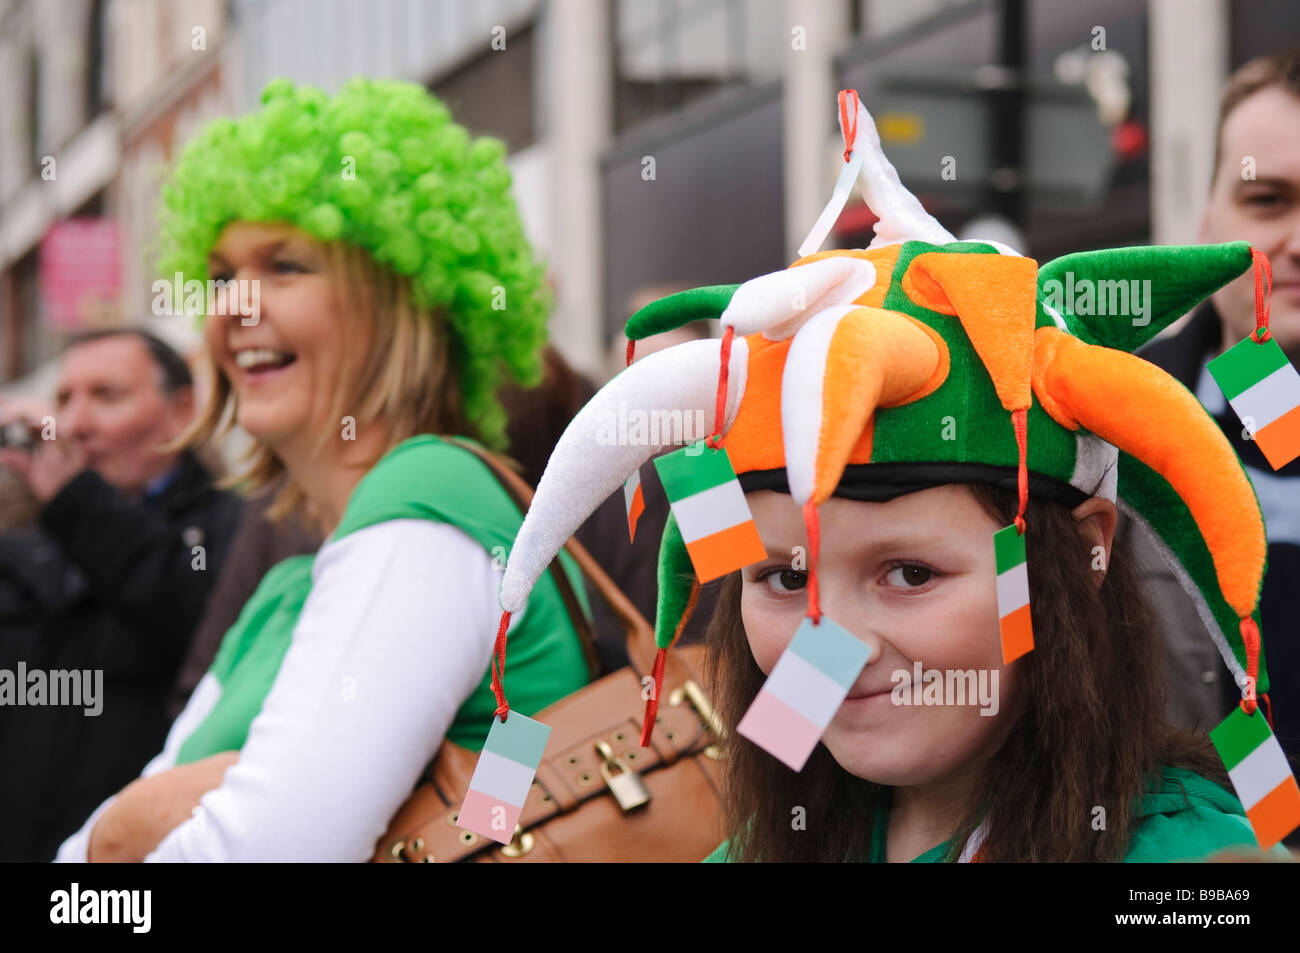 Young Girl wearing hat en bouffon vert, blanc et orange, les couleurs de l'drapeau irlandais, pendant la célébration de la St Patrick, Banque D'Images